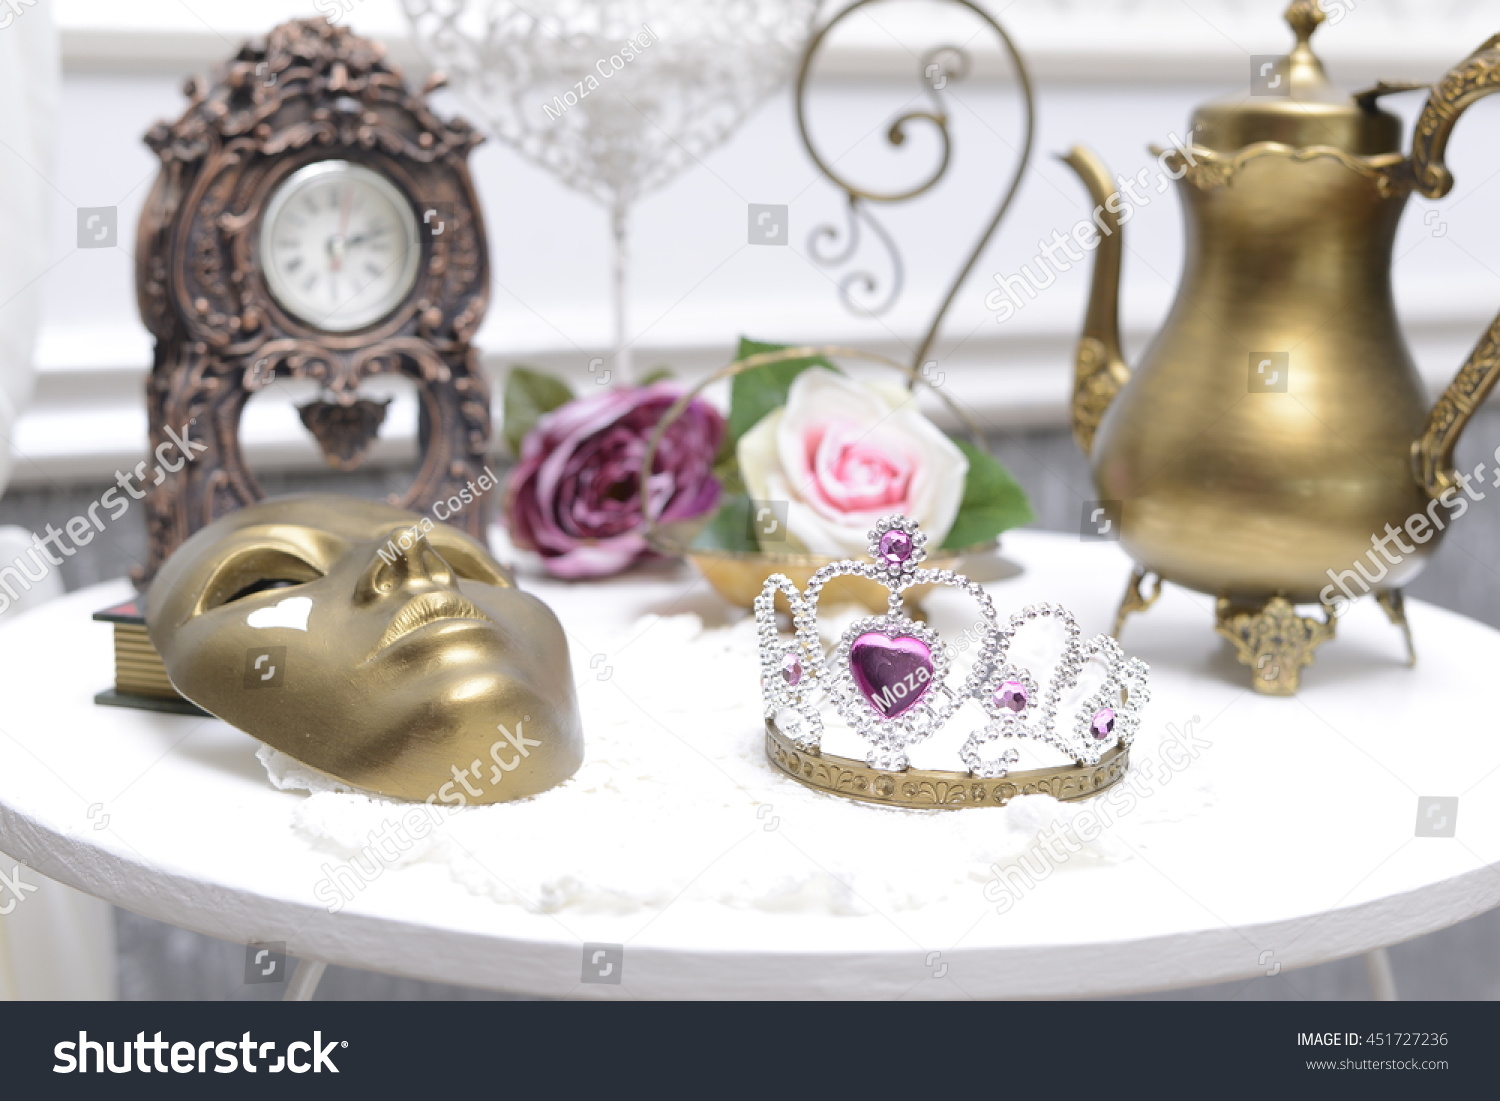 Wedding ornaments #451727236